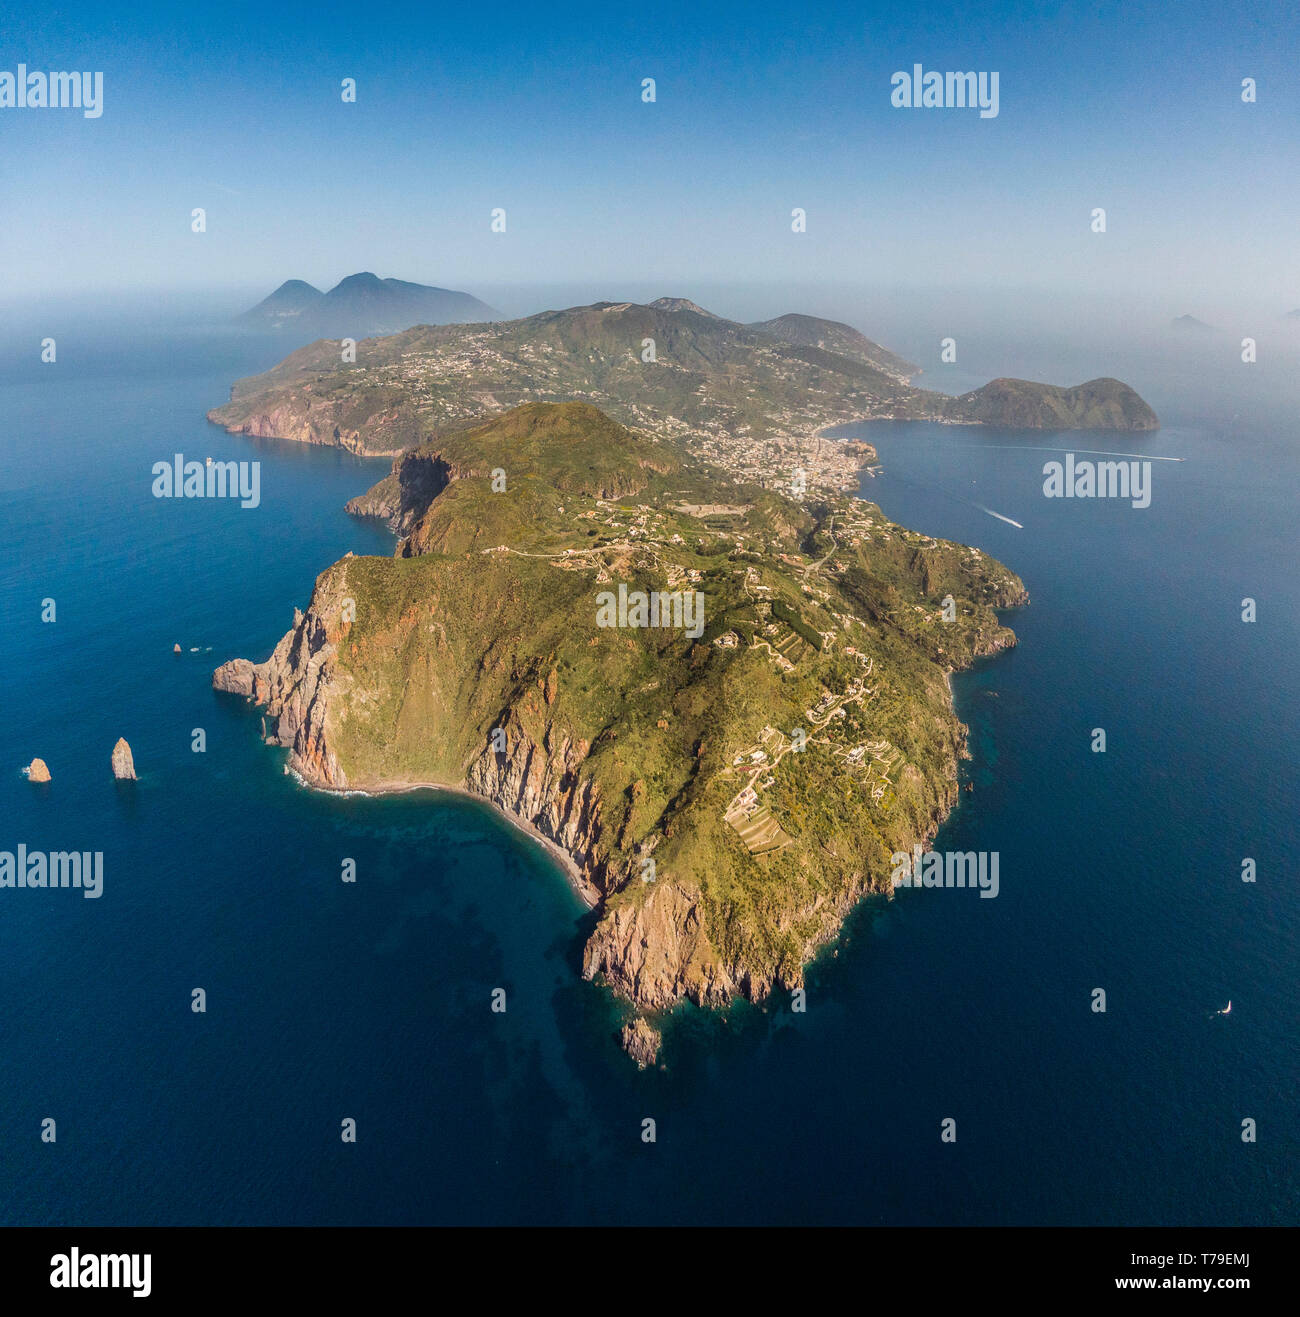 Vue aérienne de Lipari, la plus grande des îles éoliennes dans la mer Tyrrhénienne au large de la côte nord de la Sicile, le sud de l'Italie Banque D'Images